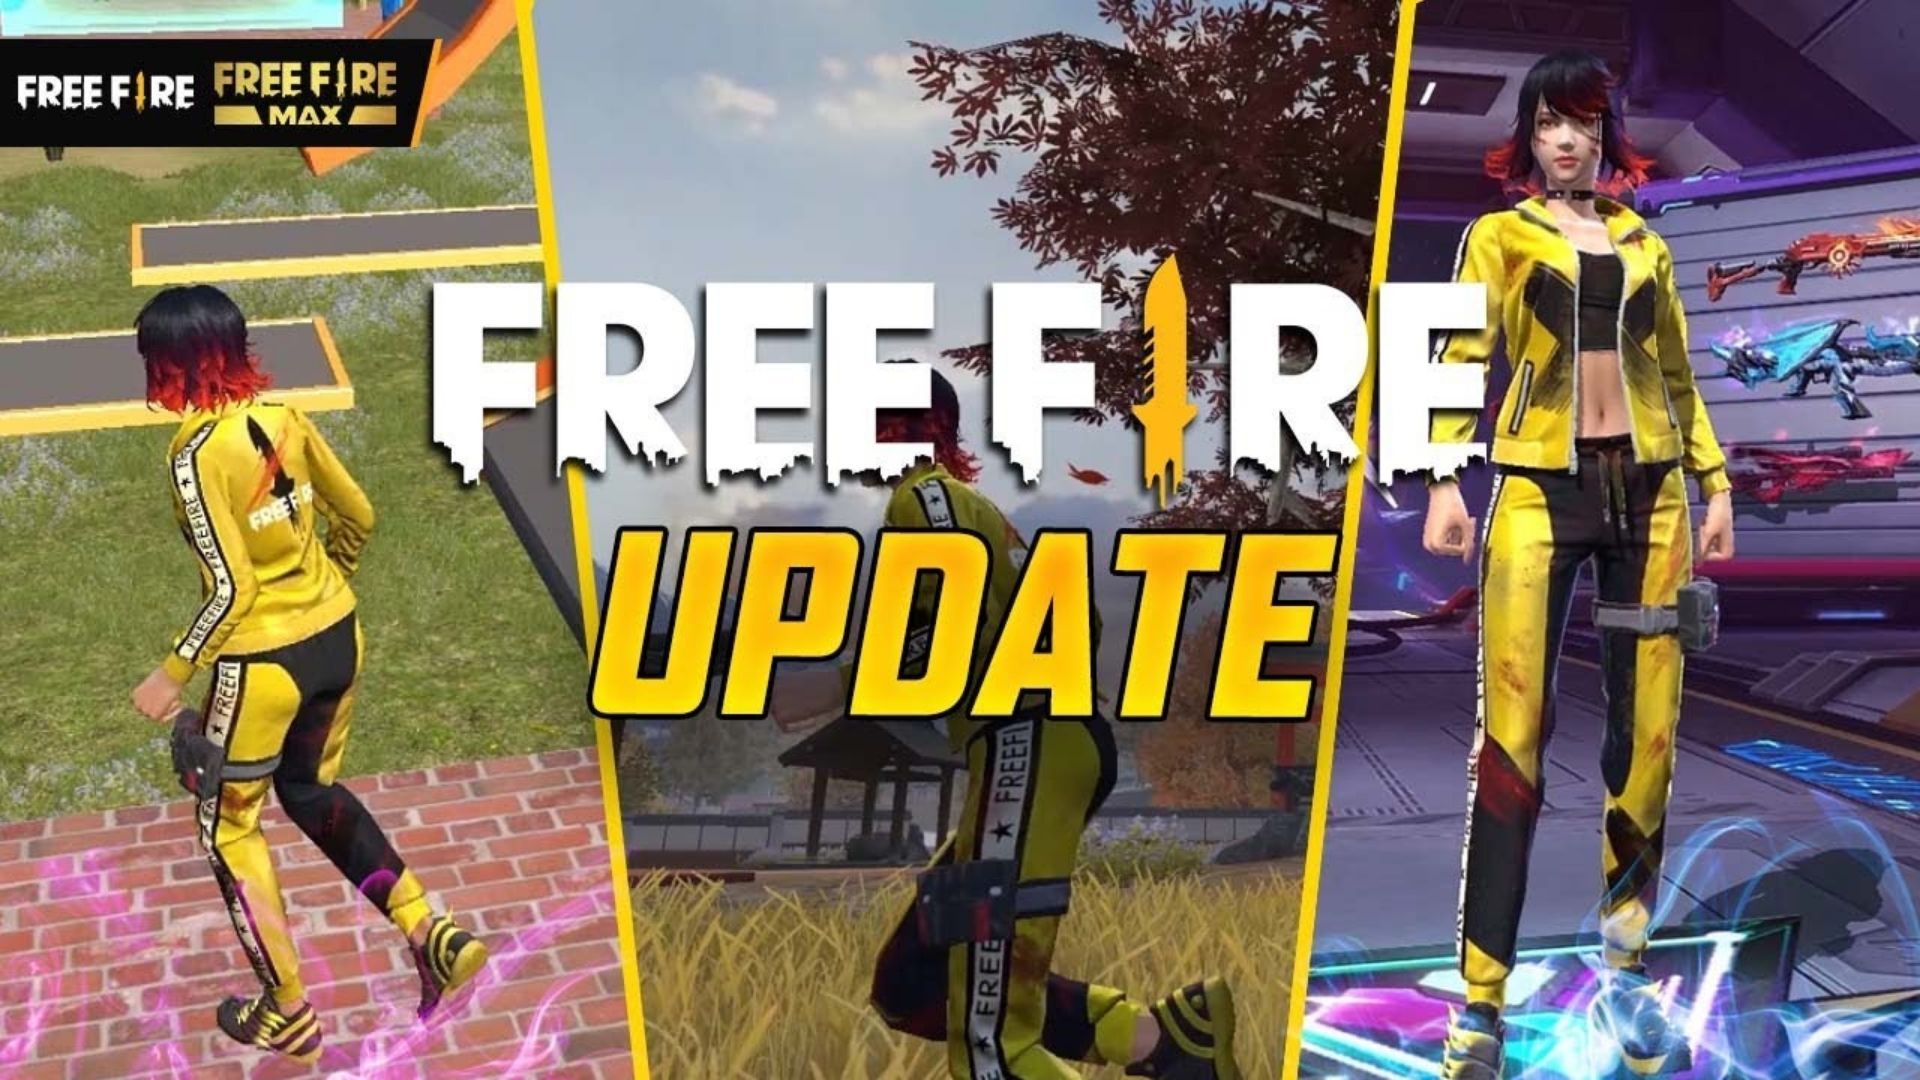 Free Fire não abre: jogo fica somente carregando - Free Fire Club